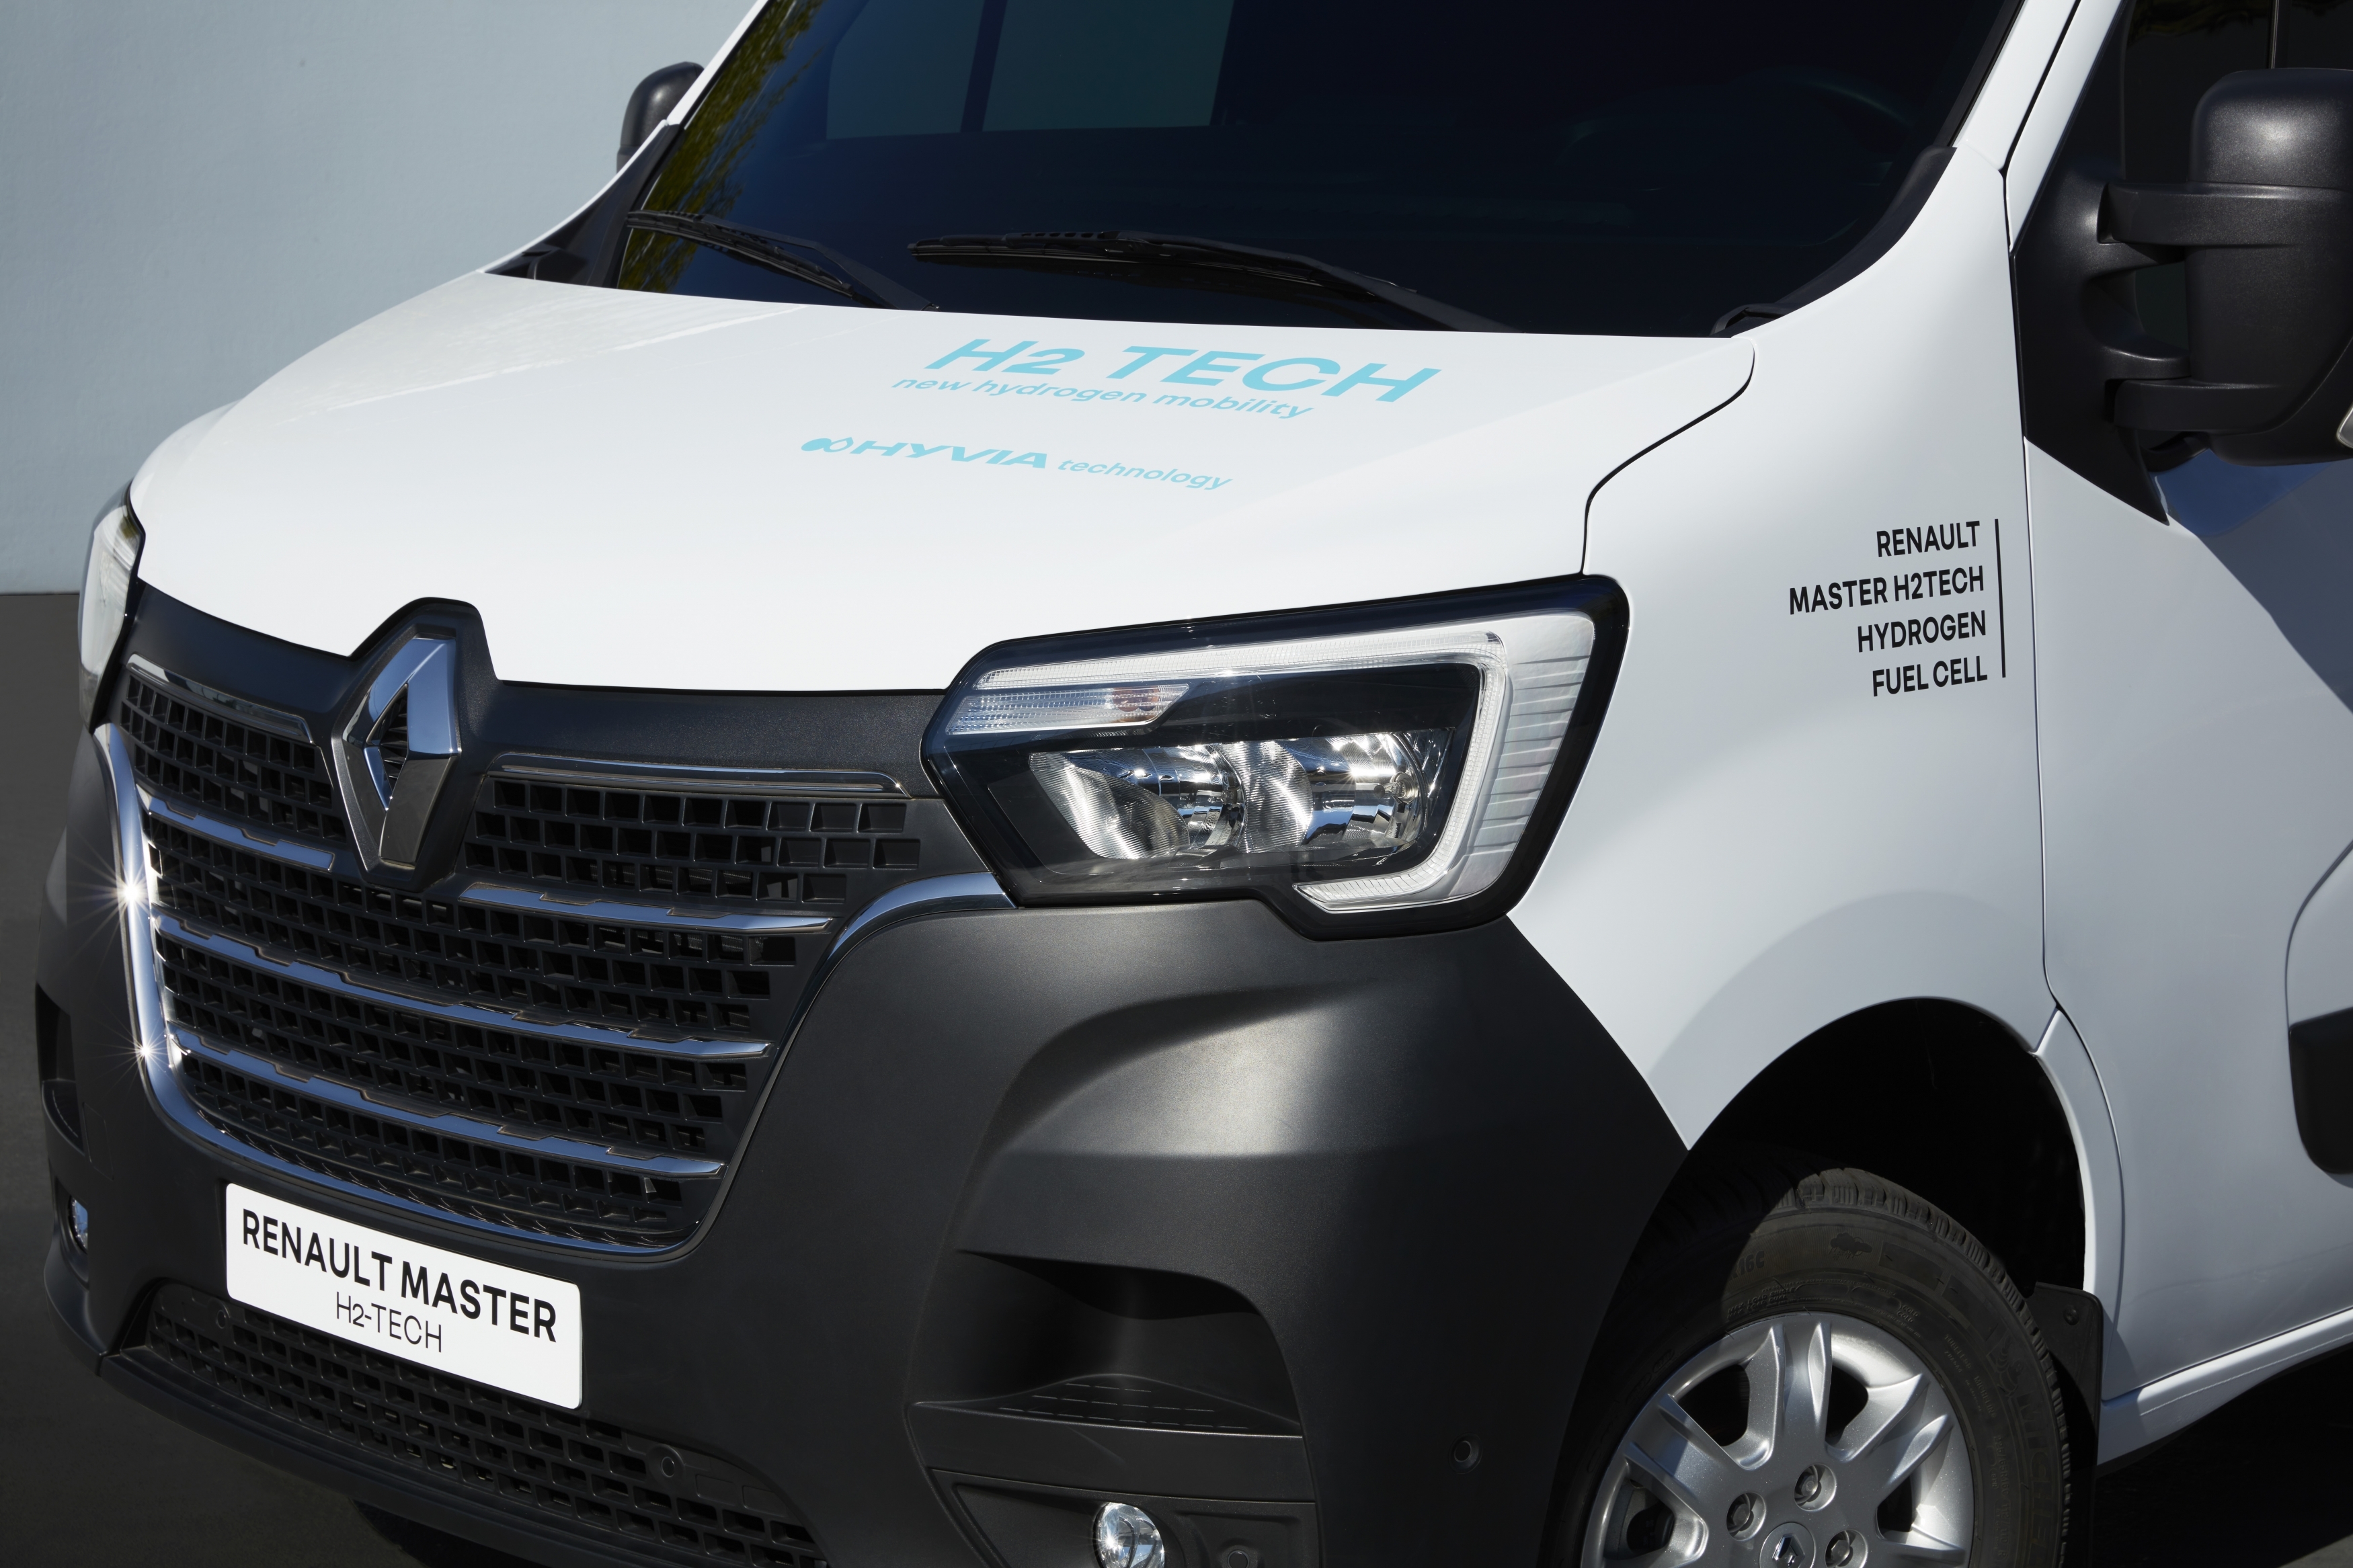 Renault Master van: first hydrogen prototype unveiled